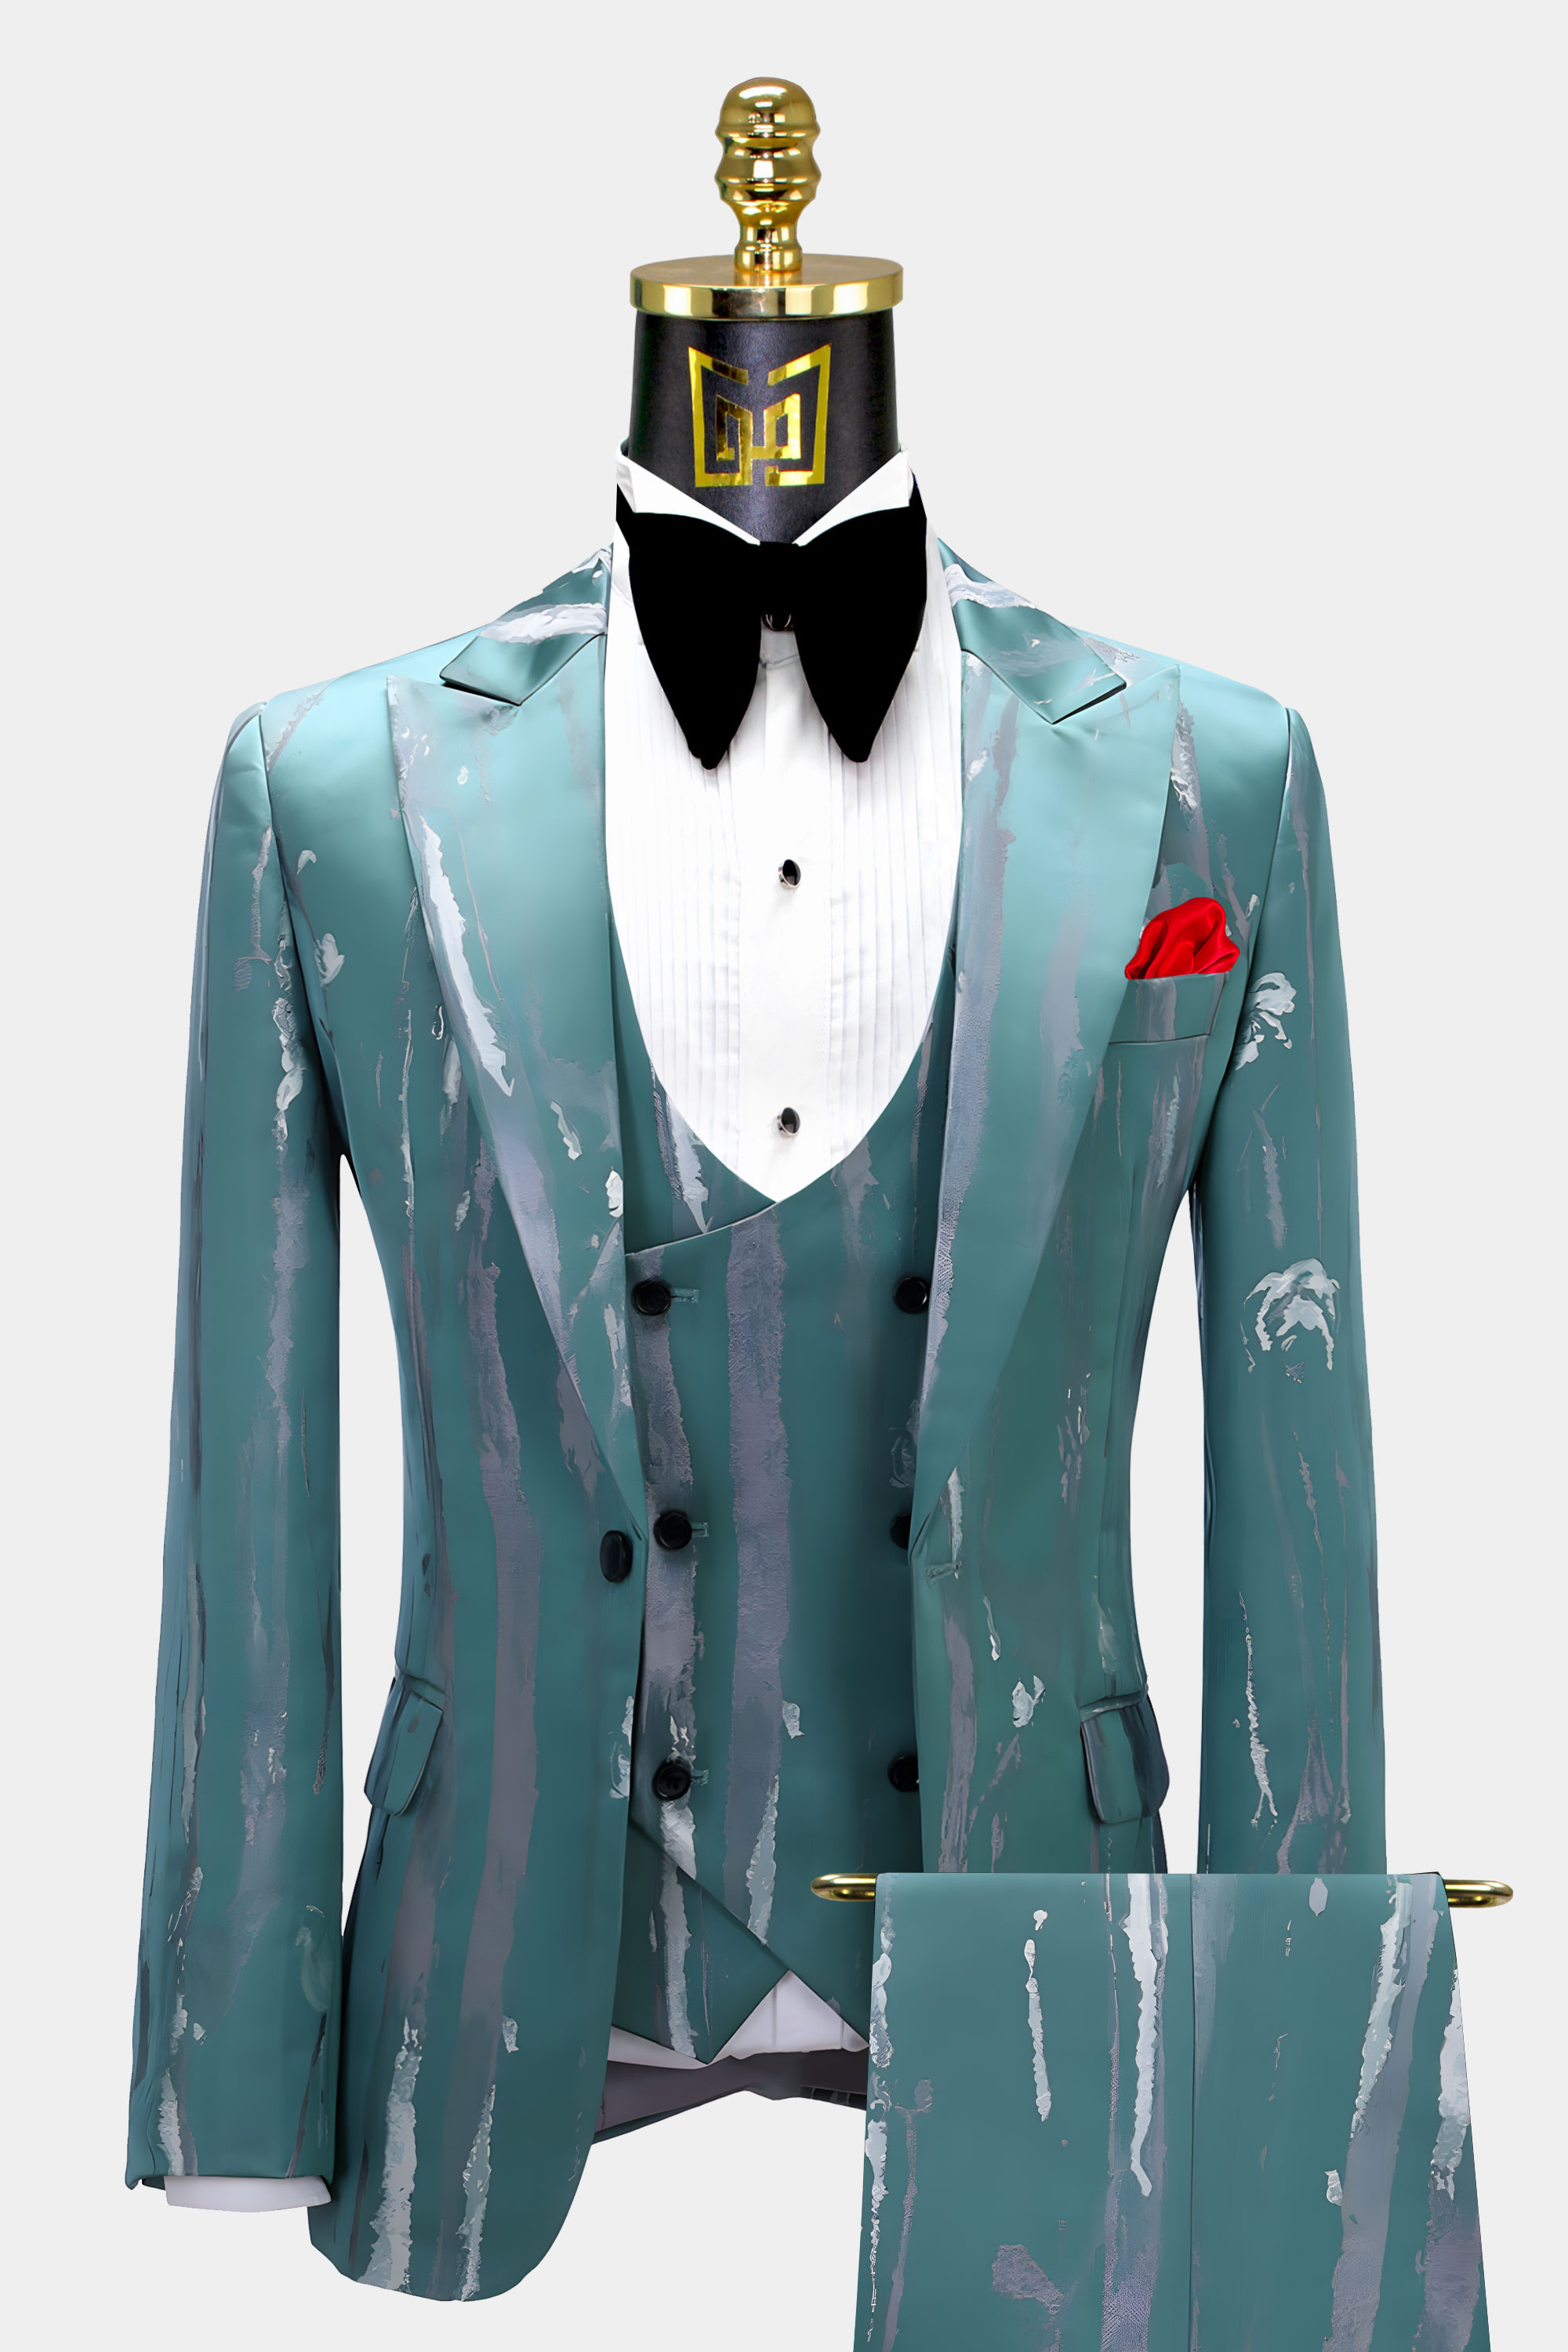 Silver-and-Teal-Blue-Suit-Groom-Wedding-Tuxedo-from-Gentlemansguru.com